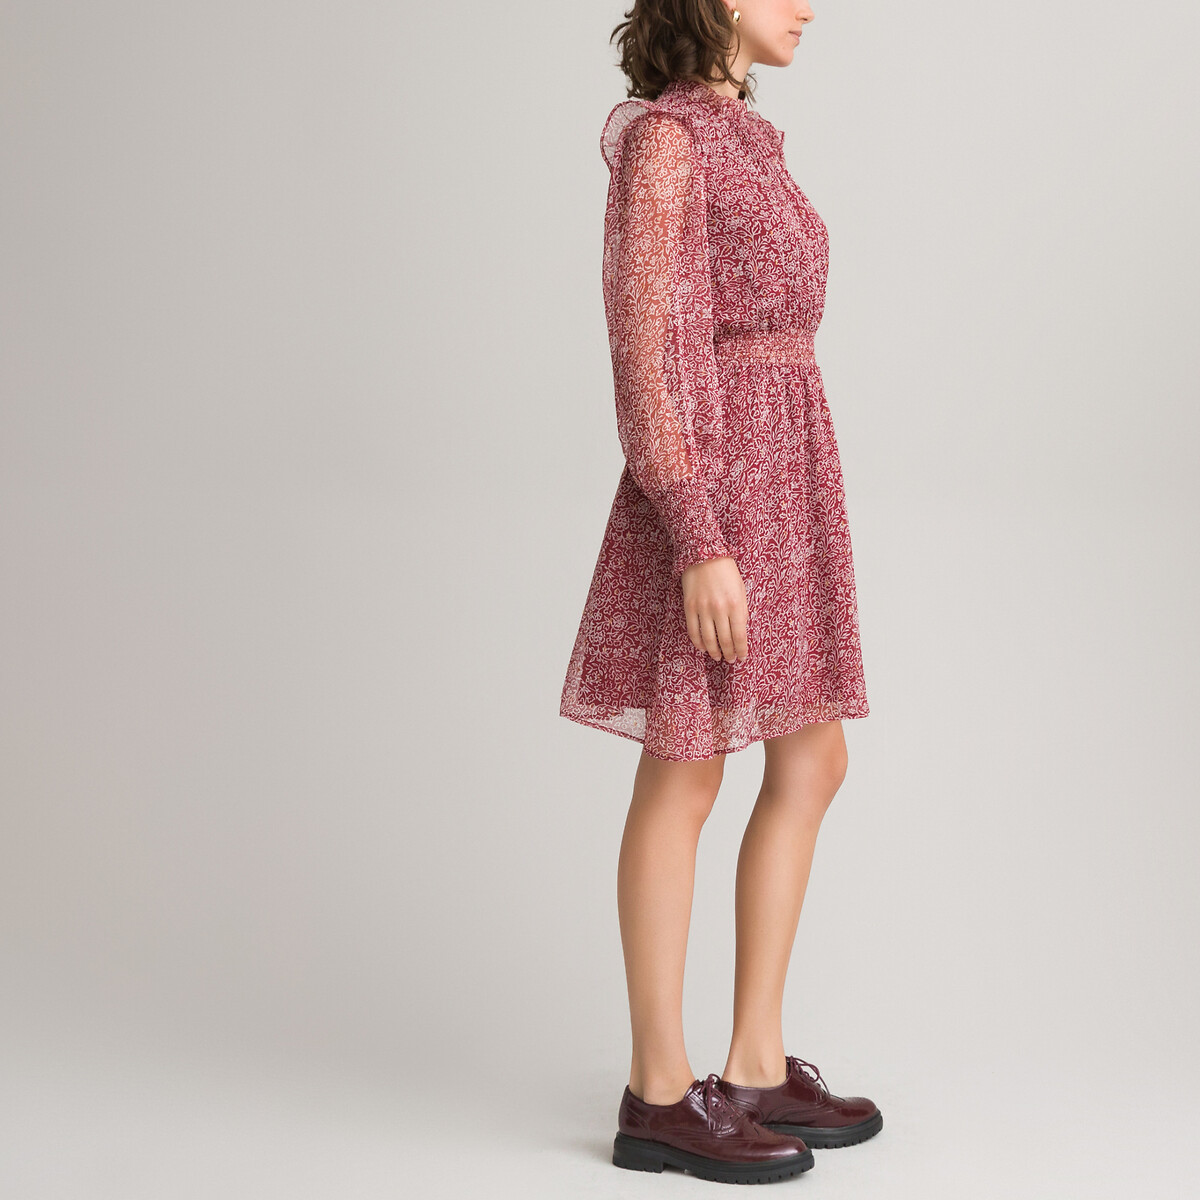 Платье LaRedoute С воротником-стойкой с воланом длинные рукава 46 красный, размер 46 - фото 2